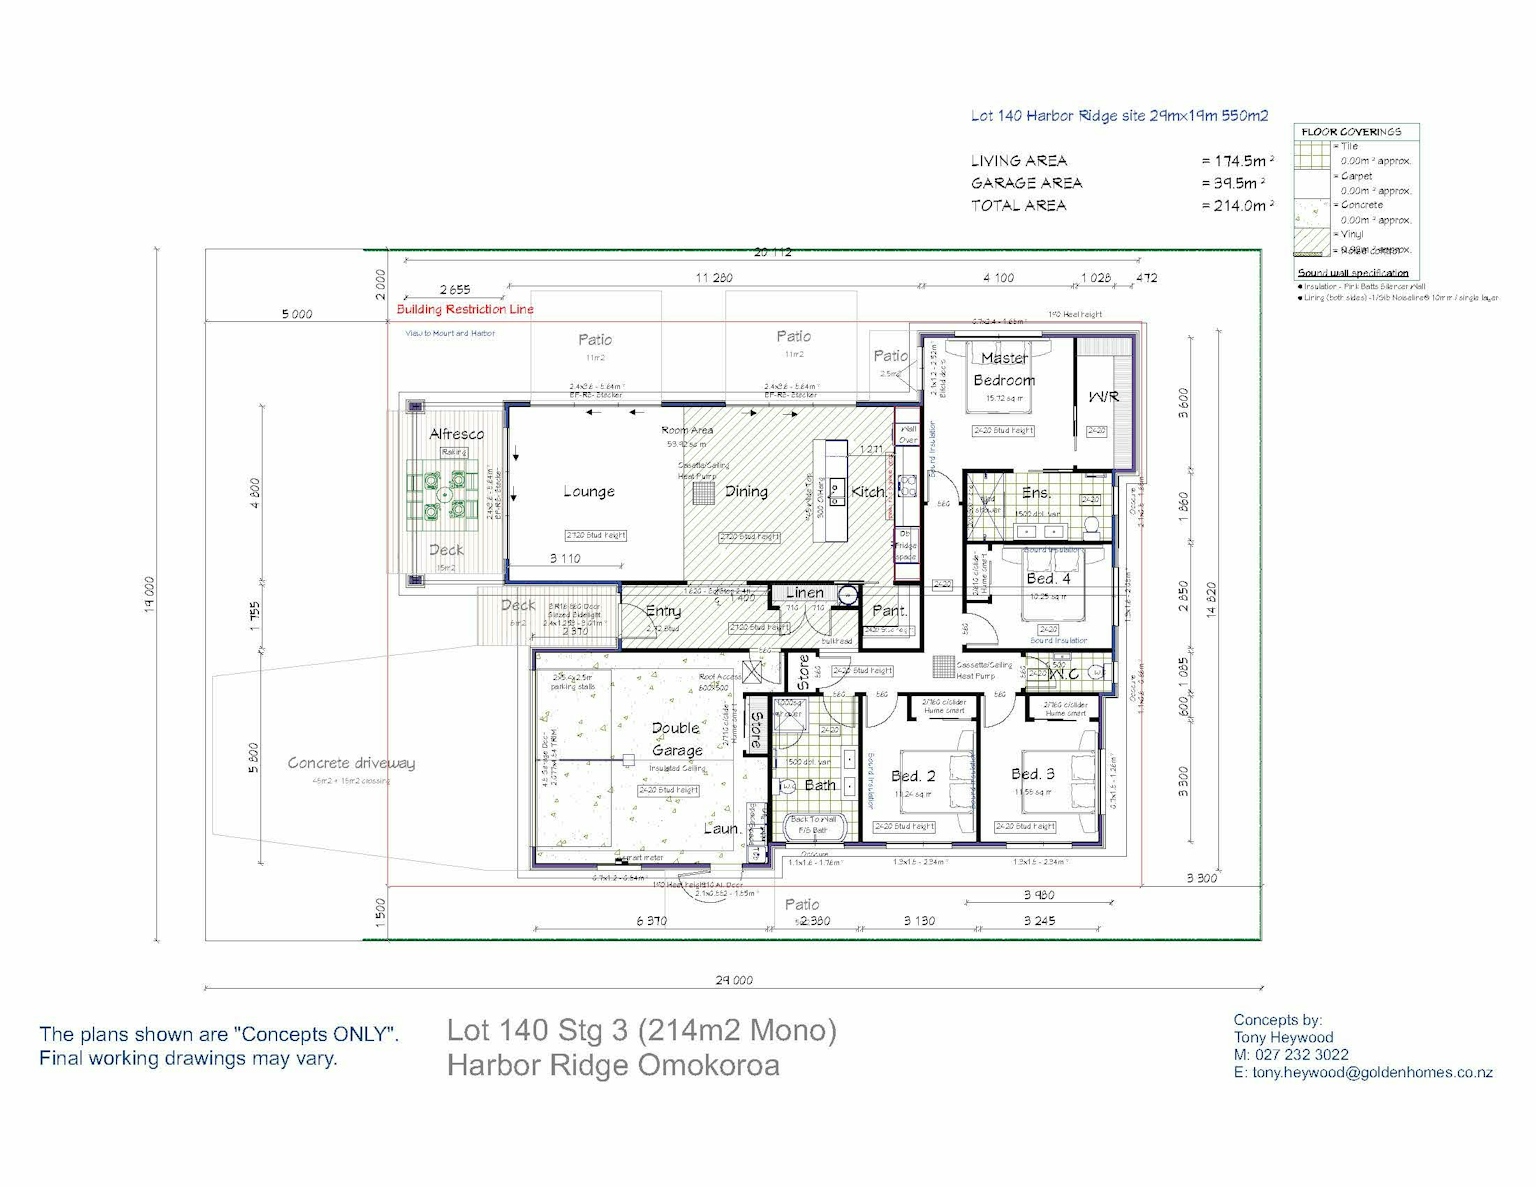 Lot 140 - Harbour Ridge, Omokoroa floor plan